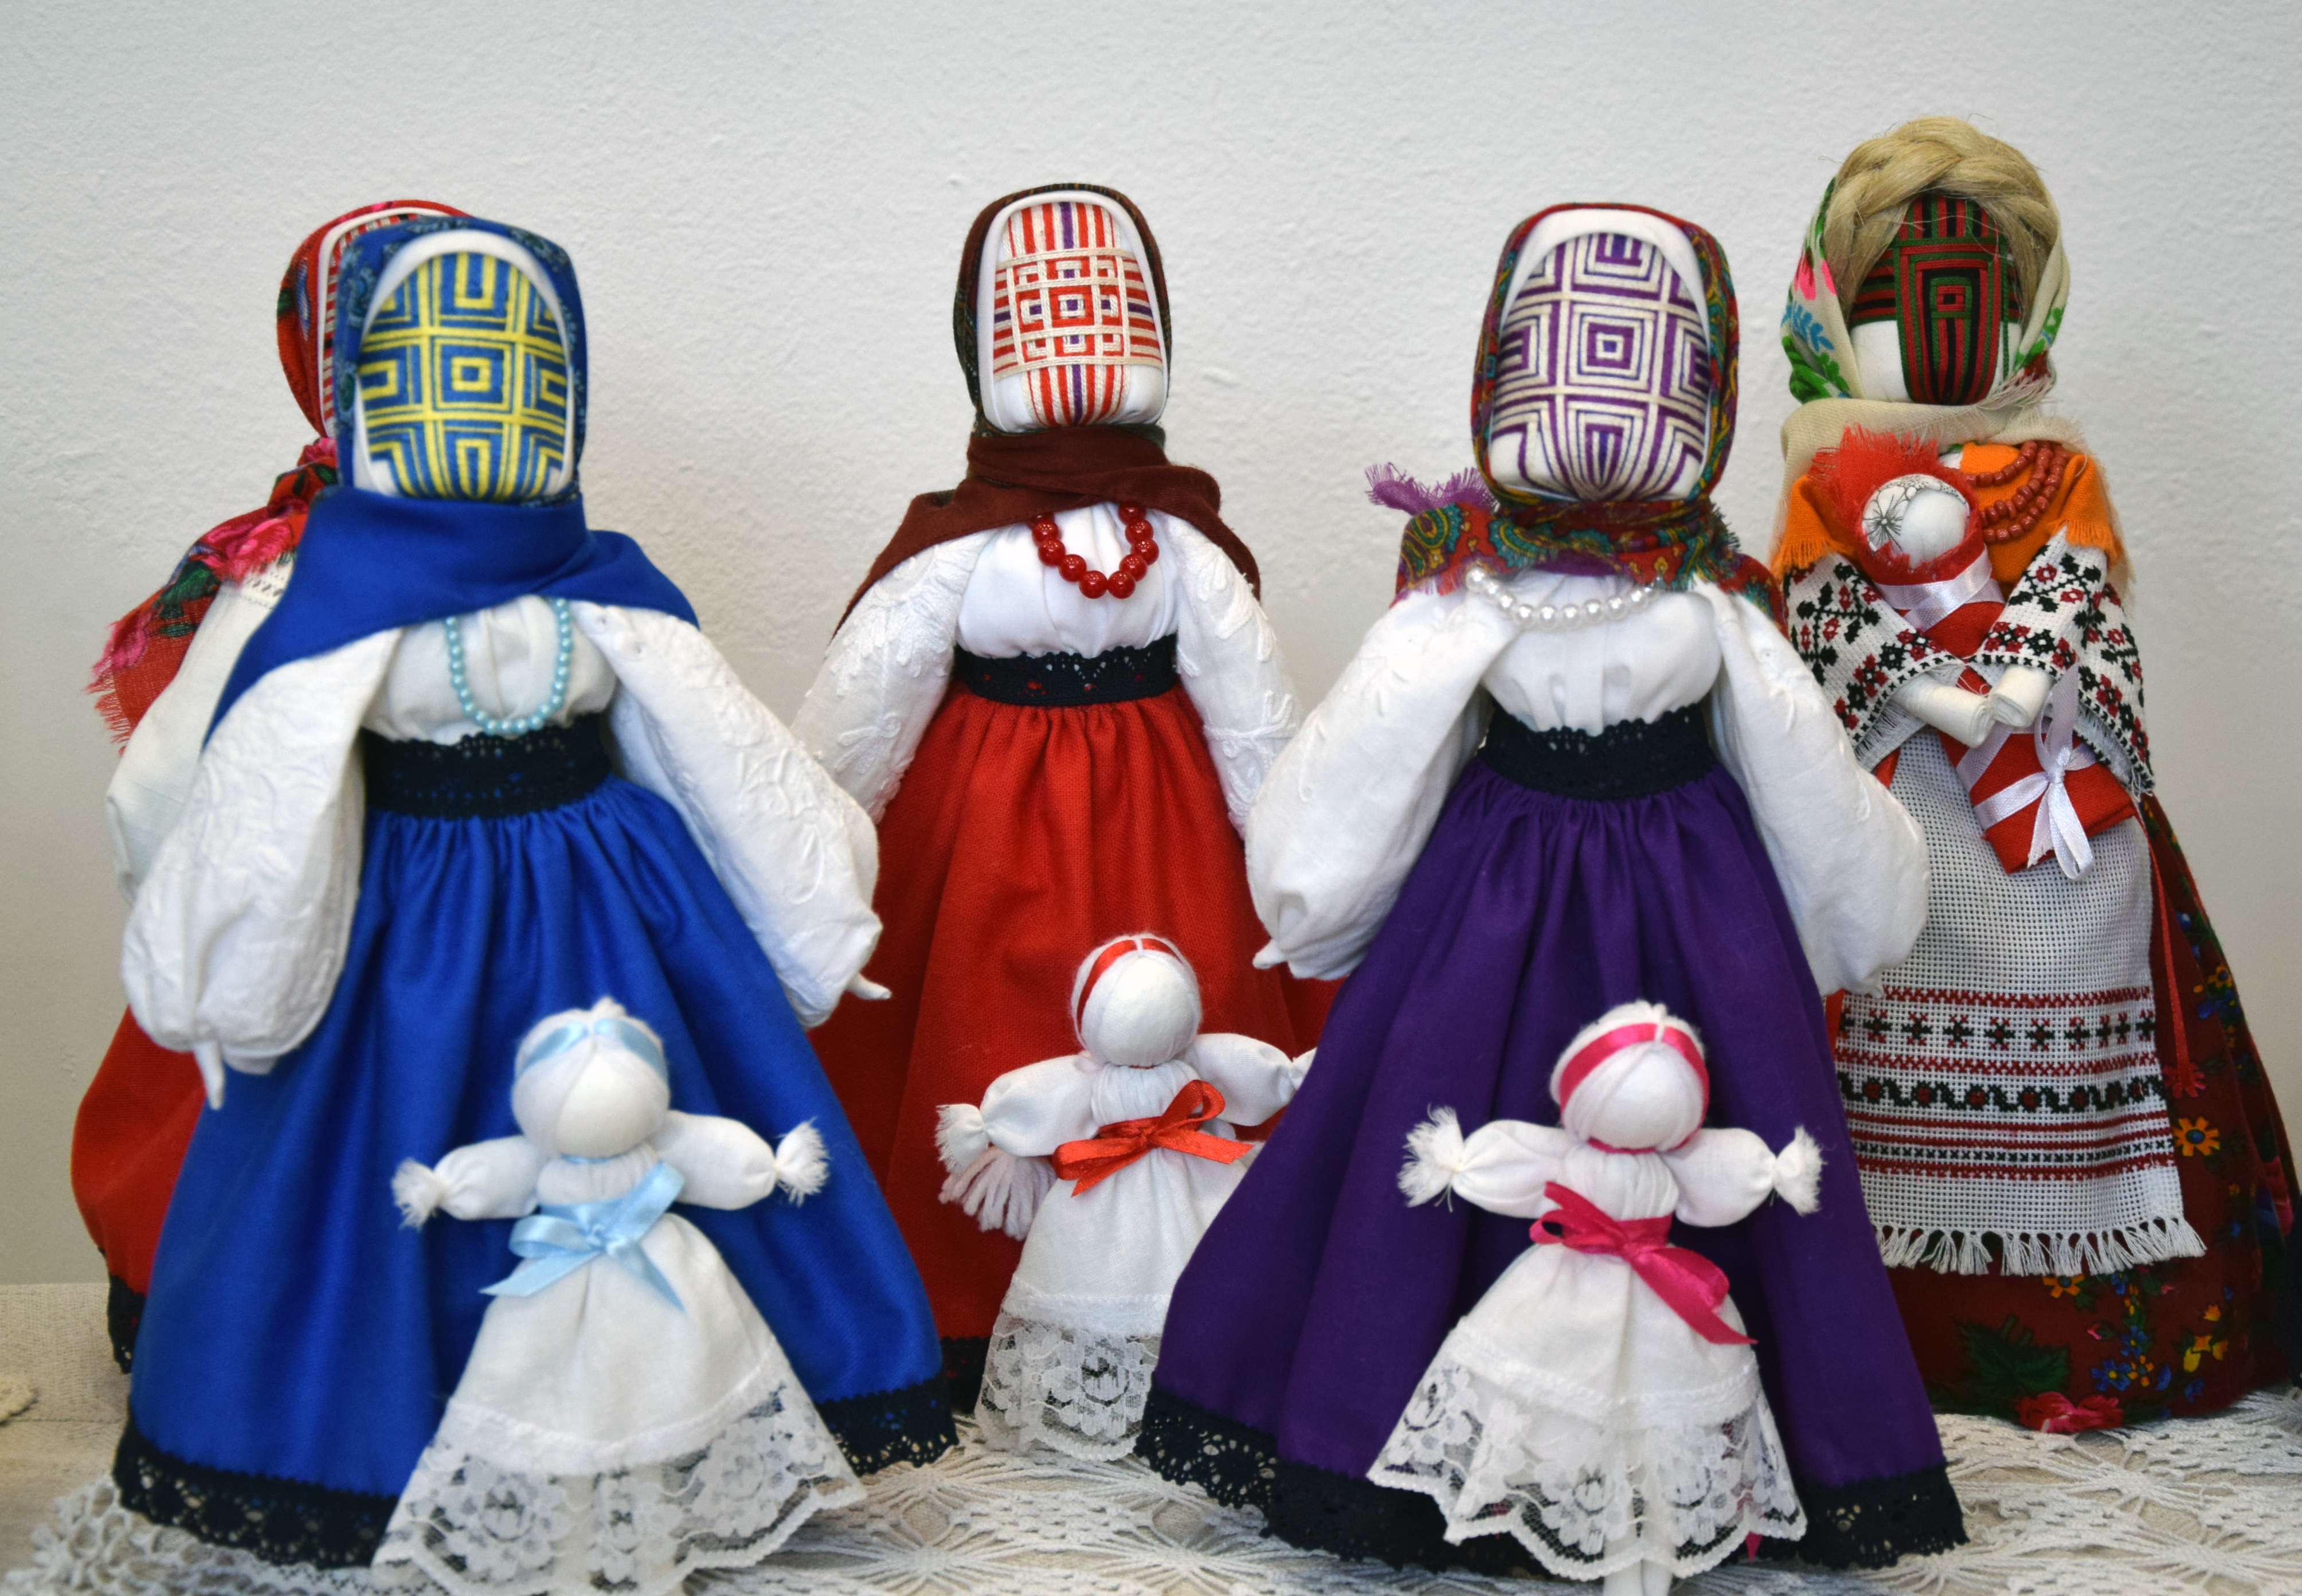 Ляльки у вбранні різних етнокультурних регіонів України — рукотвори